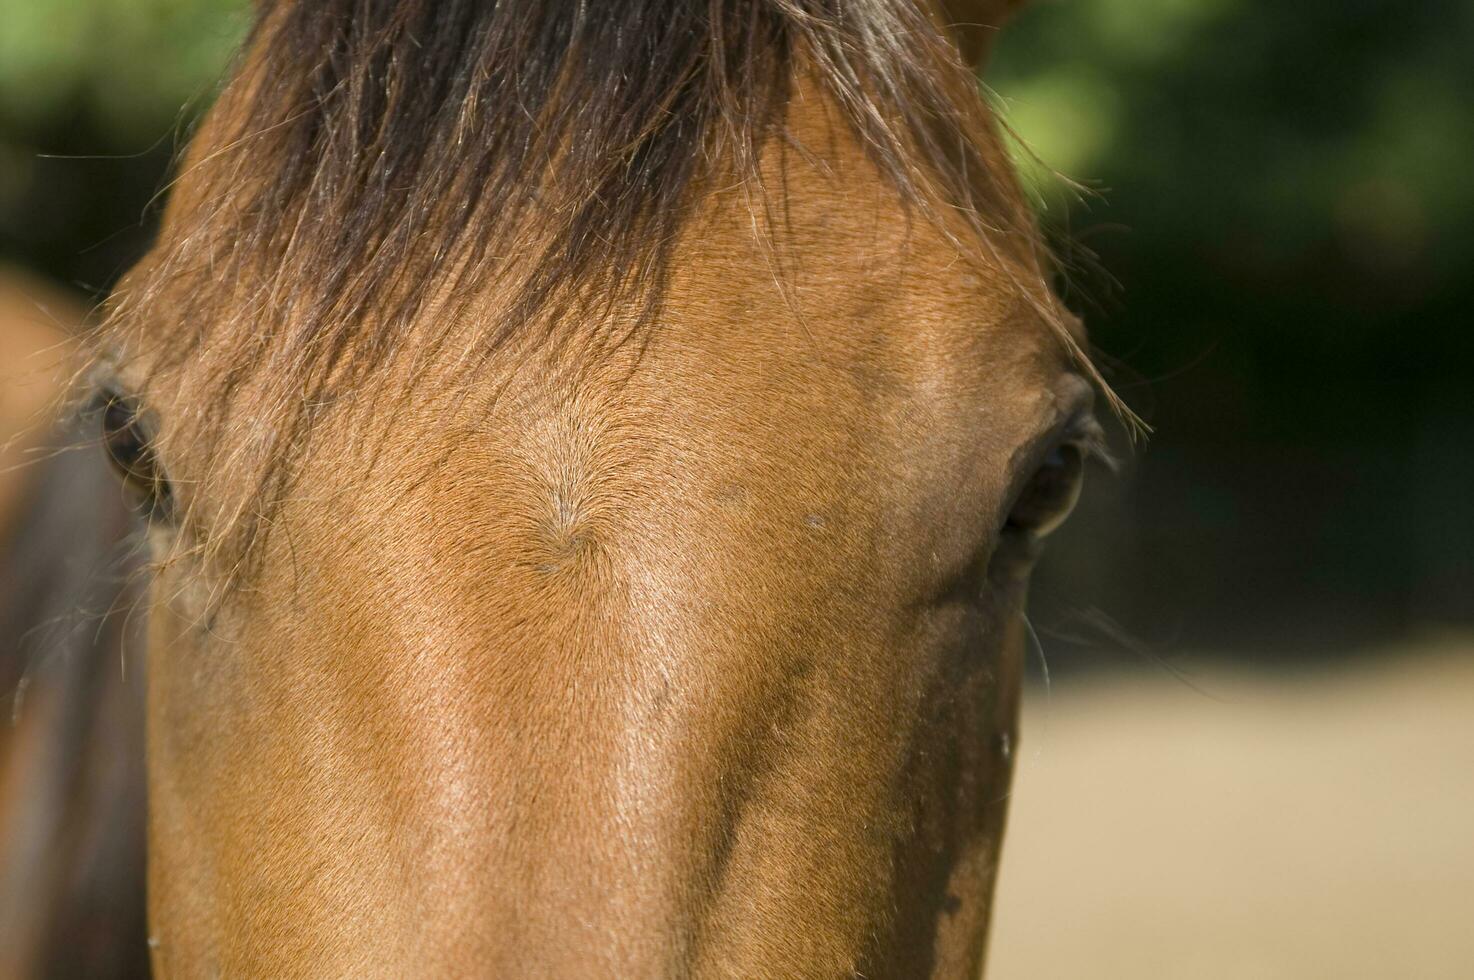 en stänga upp av en hästens ansikte foto